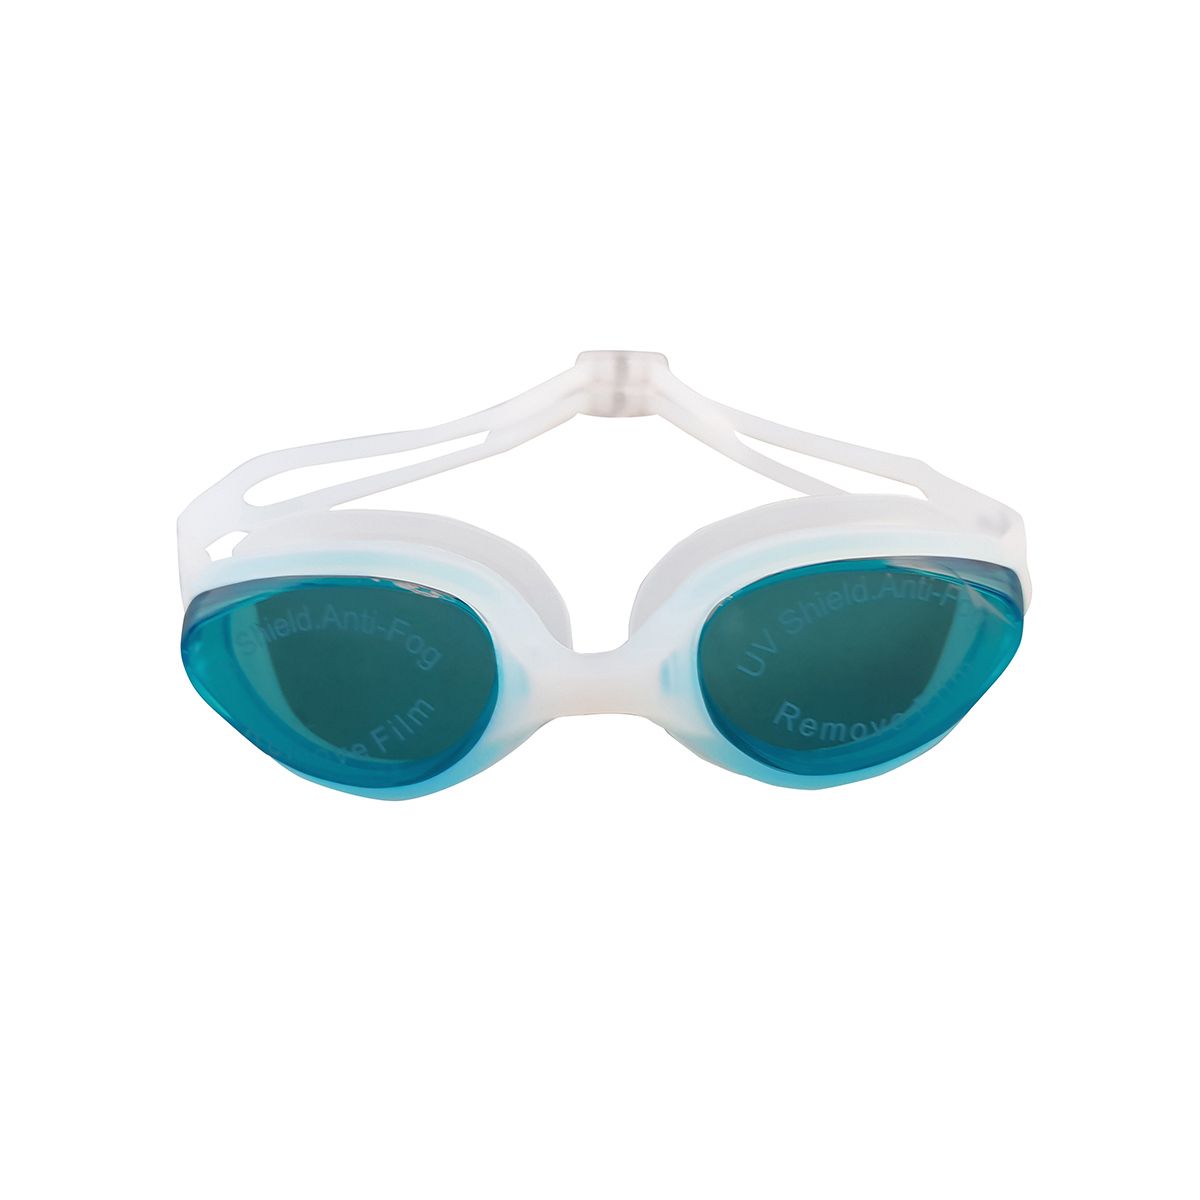  عینک شنا فری شارک مدل MC-2300 -  - 1